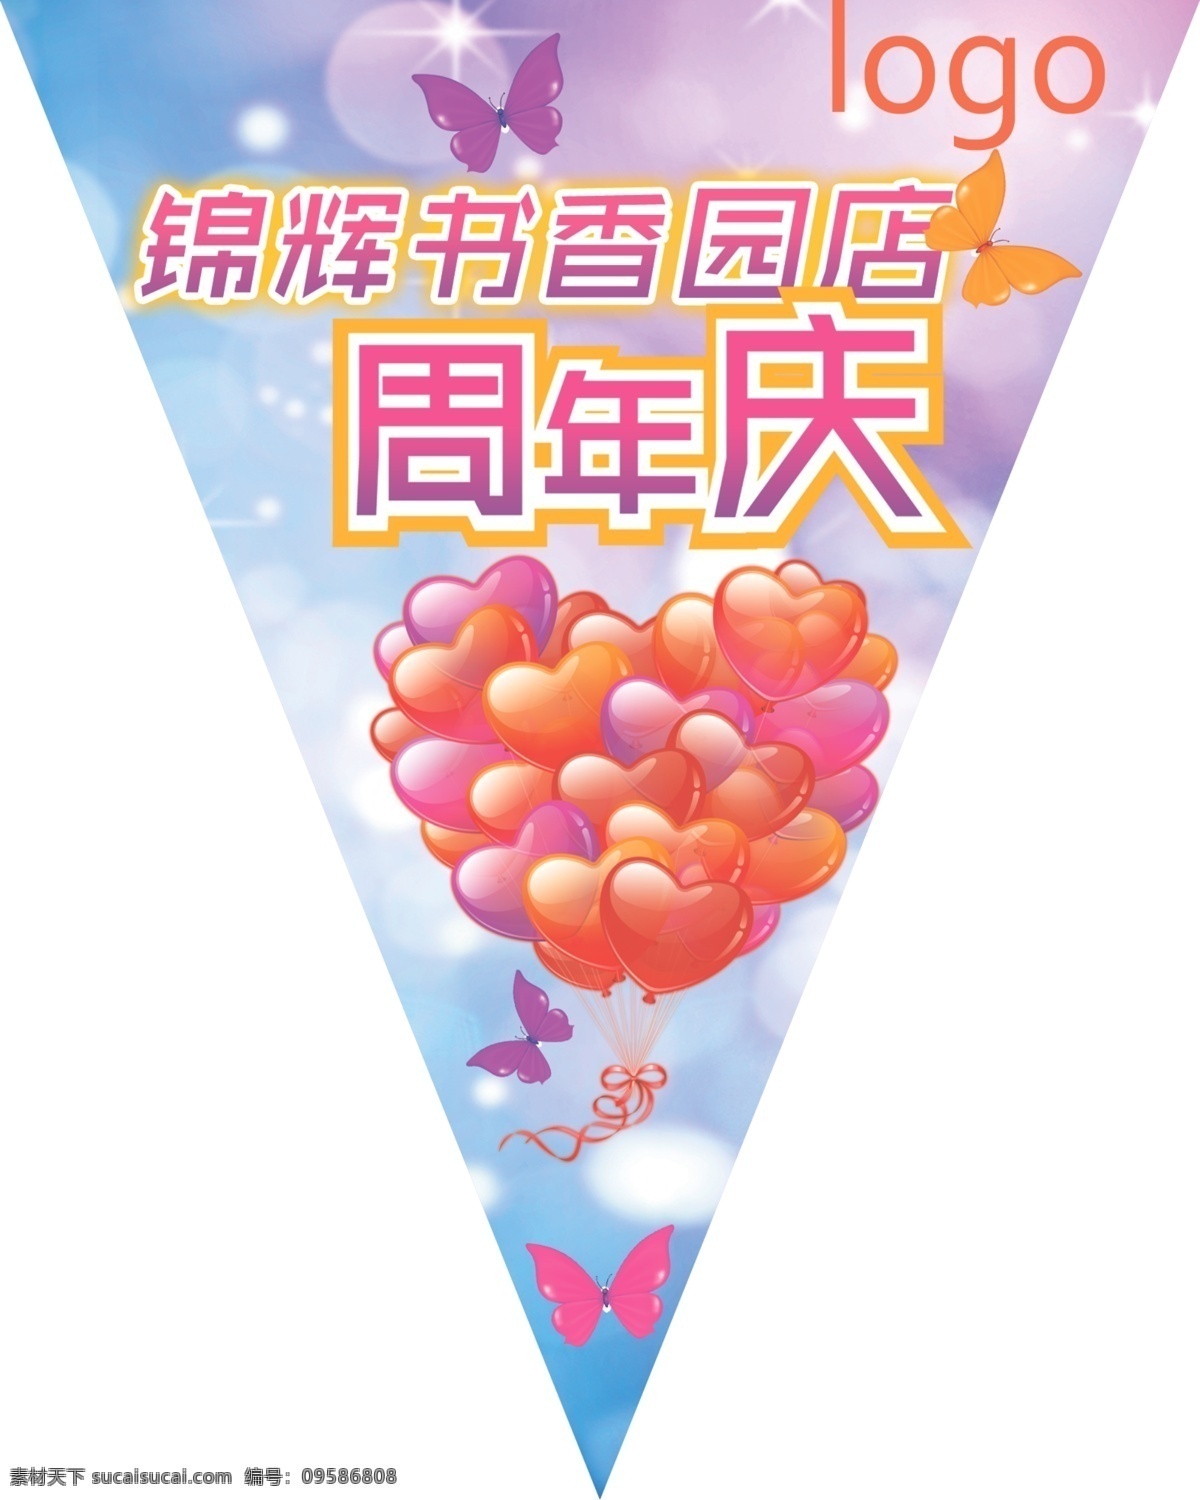 周年庆 三角 吊 旗 气球 蝴蝶 光晕 吊旗 广告设计模板 源文件